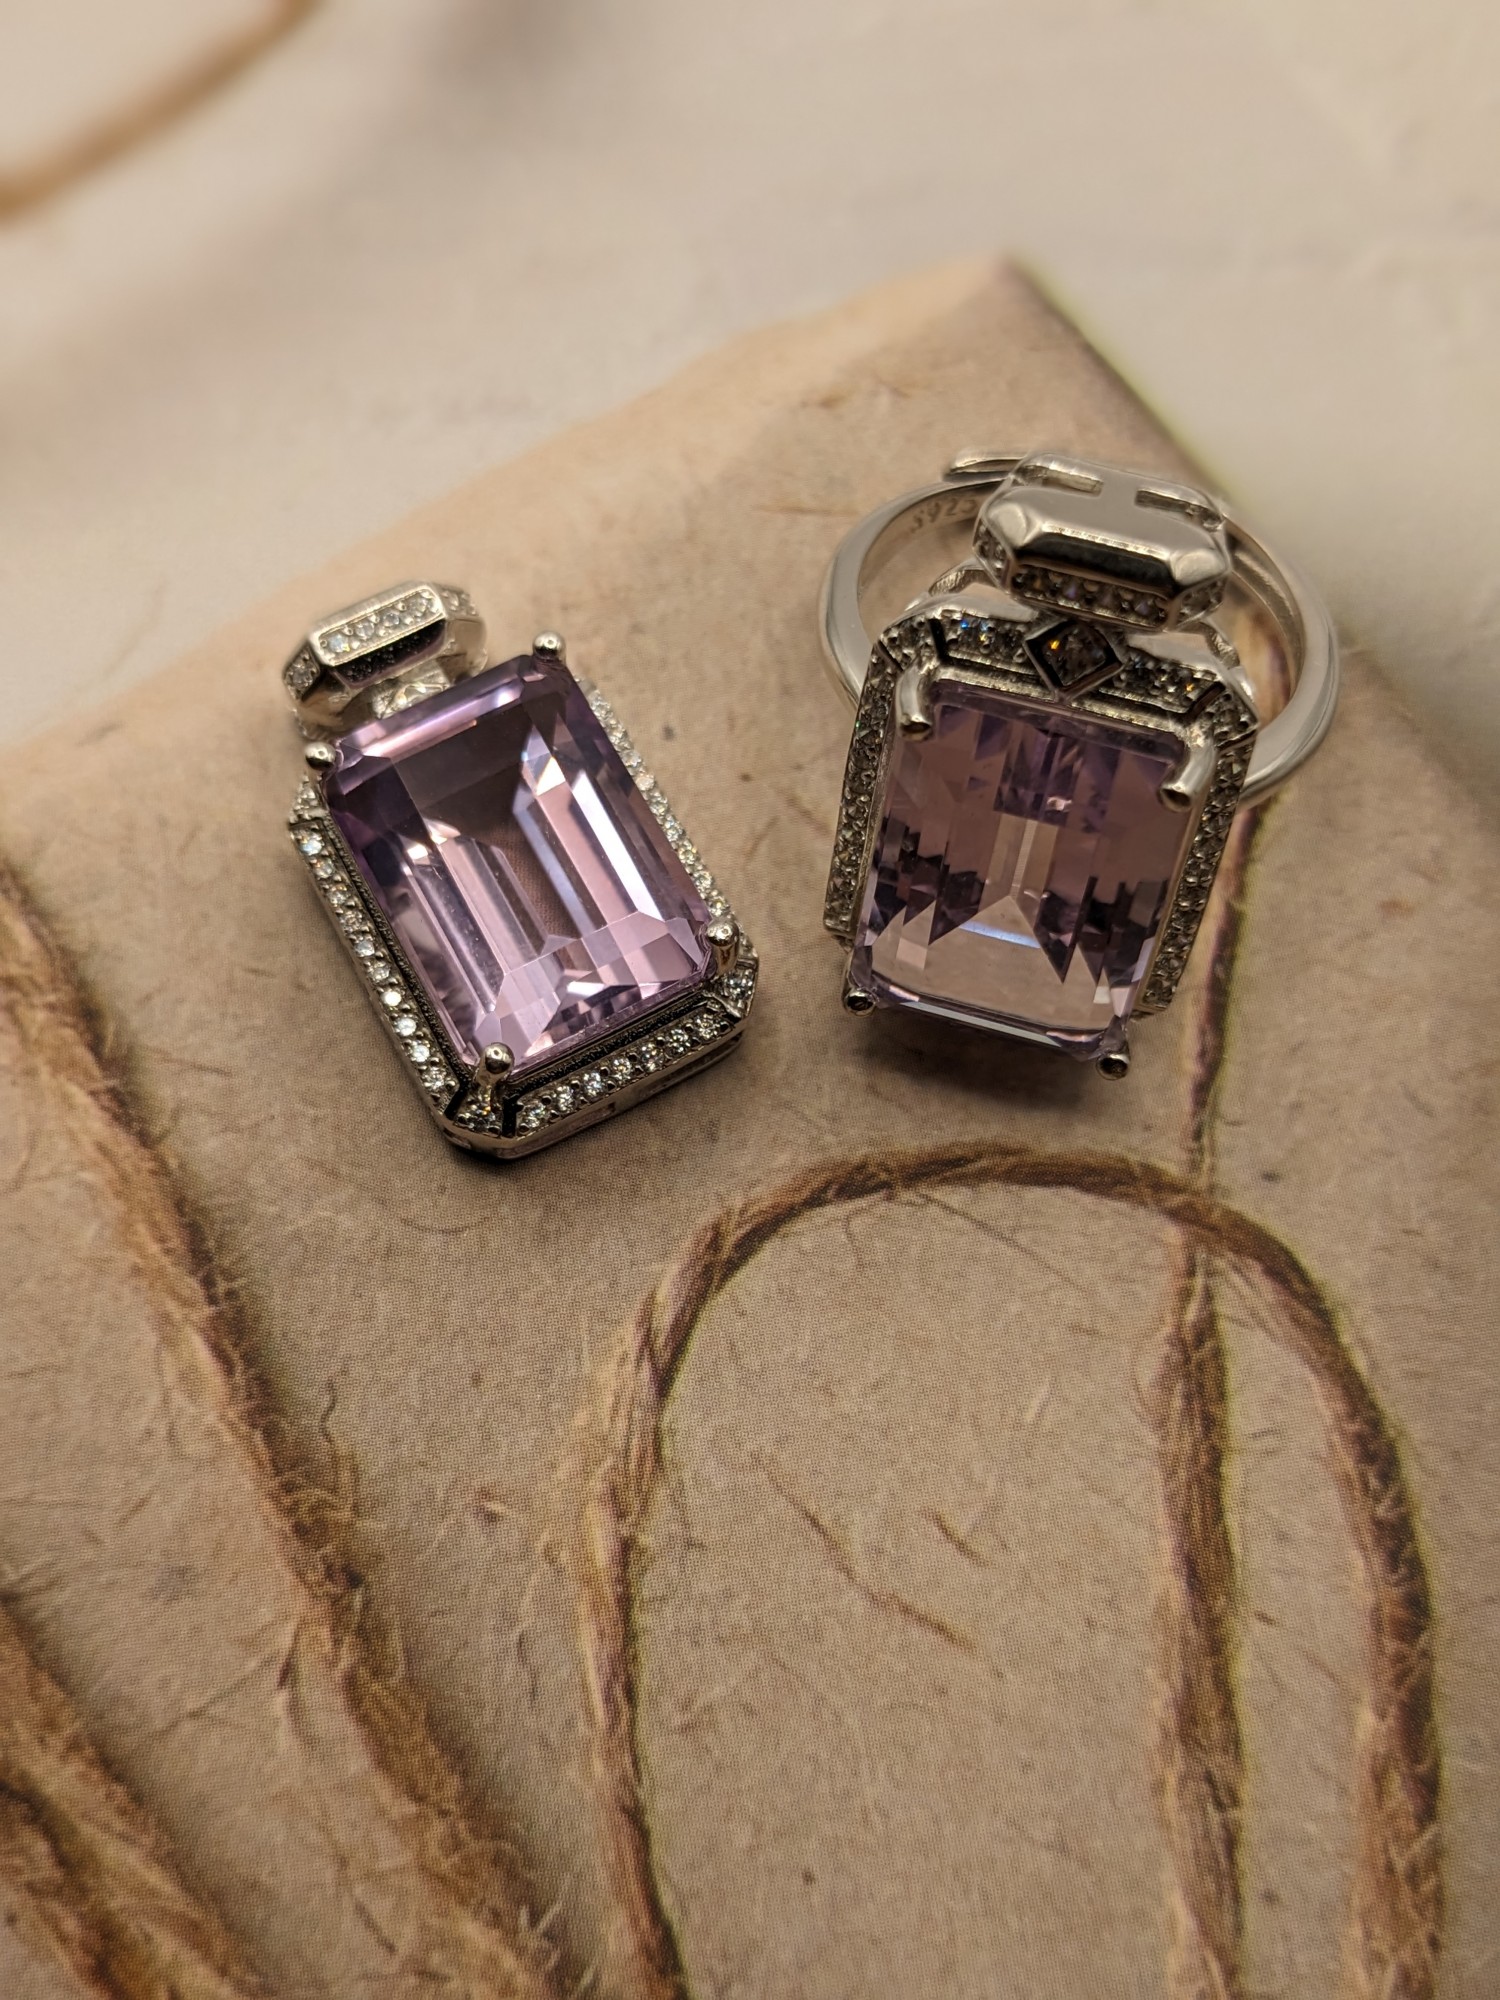 紫玉晶鑽切方鑽~項墜、戒子.925純銀包台套組 編號G24-4-4-6411